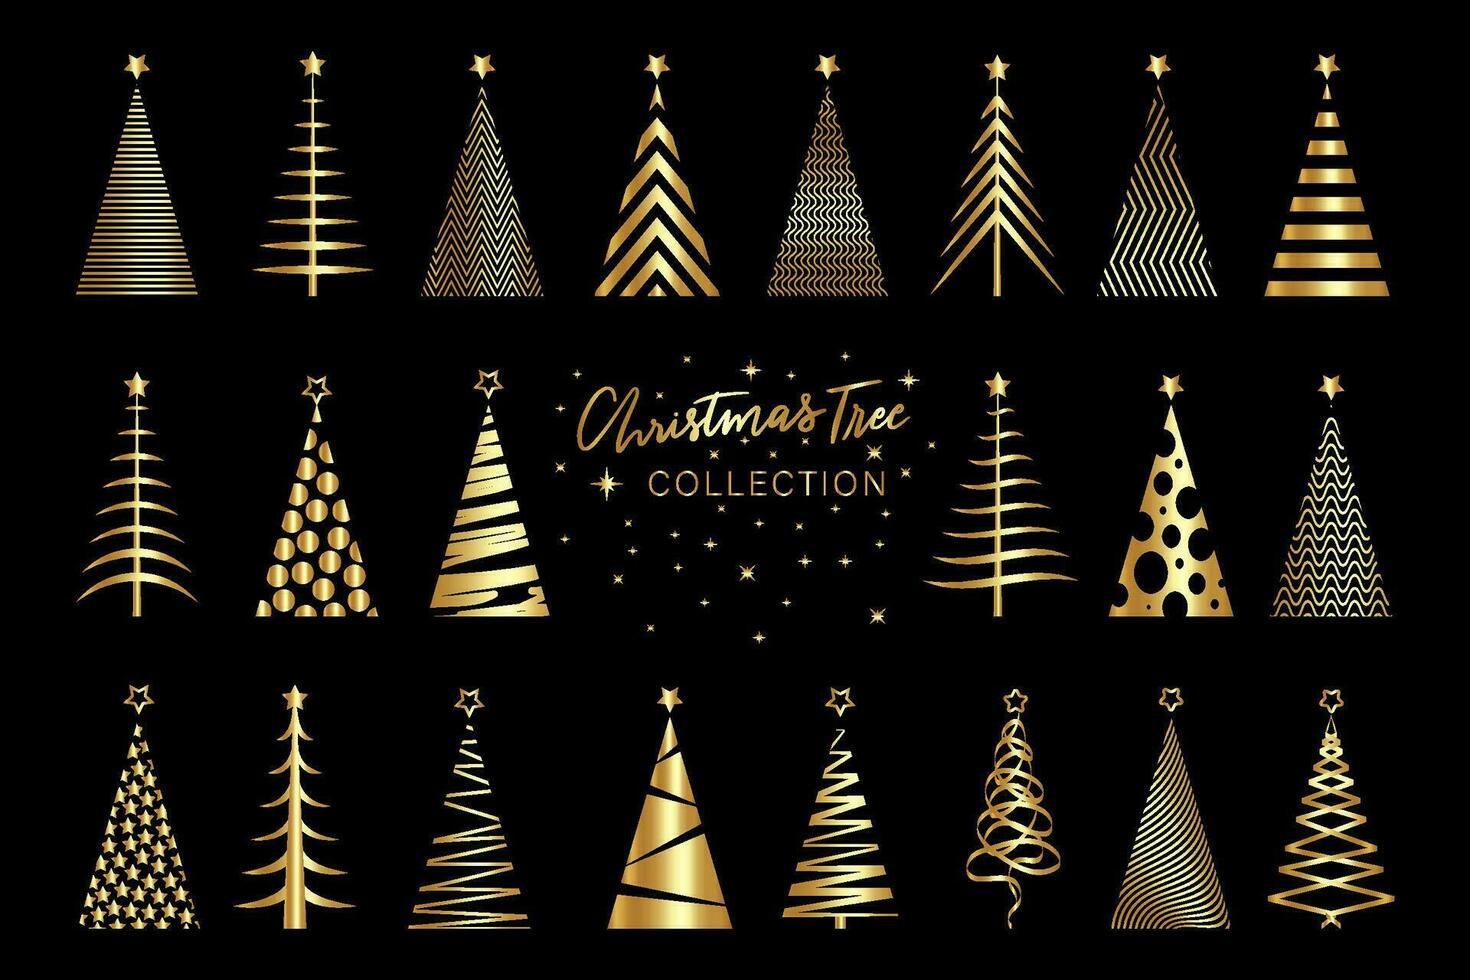 conjunto clipart Navidad árbol oro textura, dorado lujo iconos, oro vector estilizado alegre Navidad, festivo temática invierno fiesta invitaciones con geométrico decoraciones, aislado en negro antecedentes